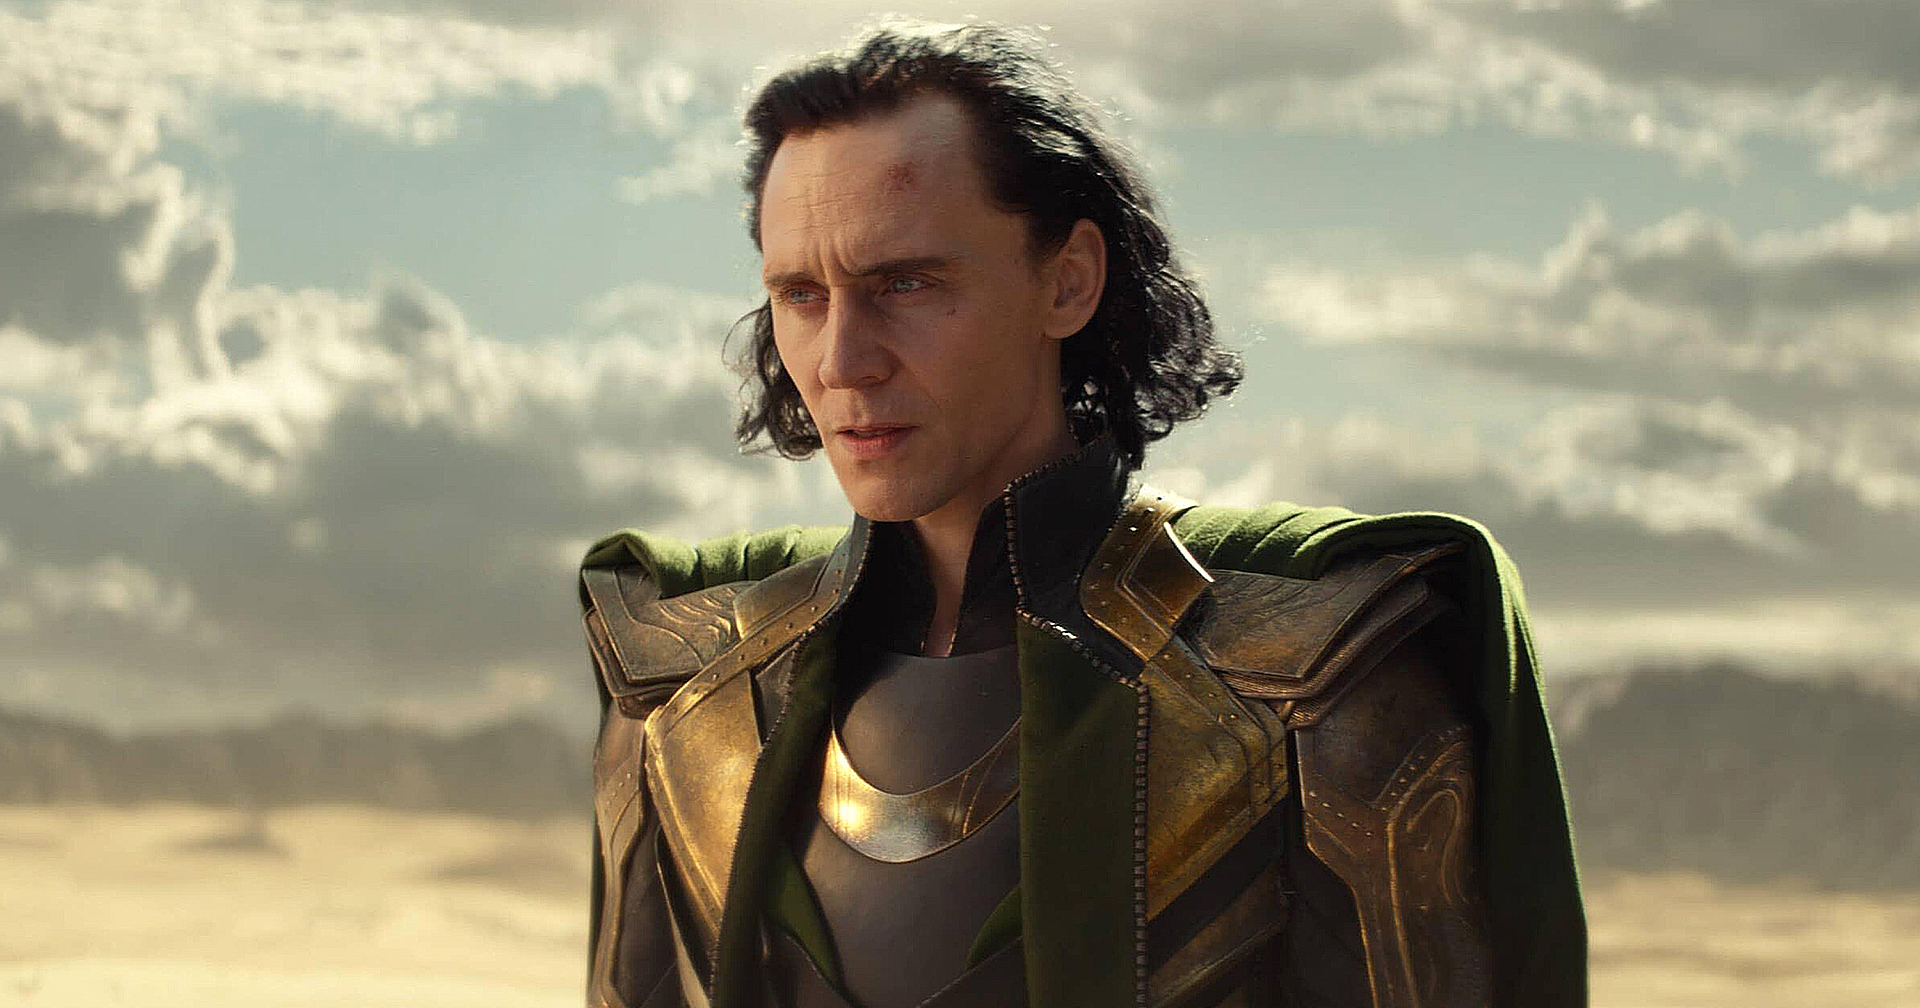 Marvel ยืนยัน Loki จะกลับมาในซีซัน 2 แน่นอน